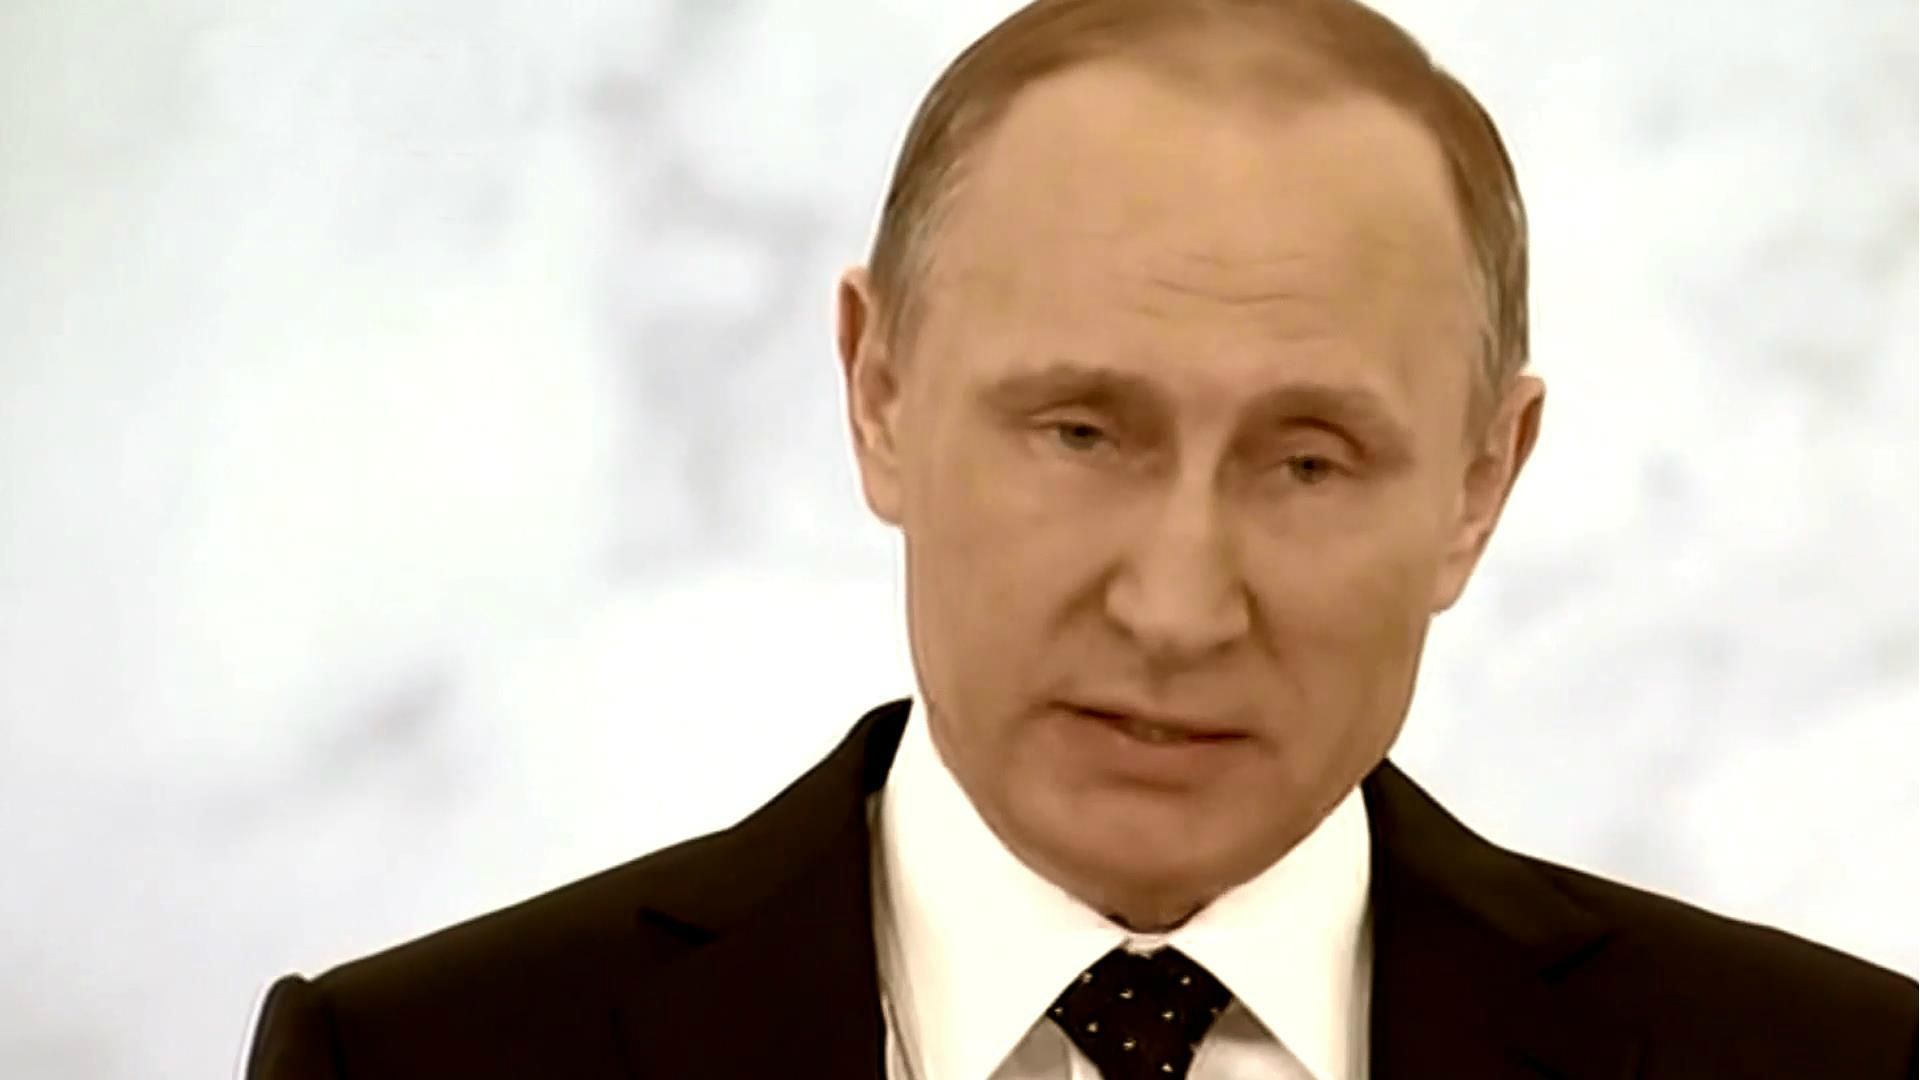 Що Путін насправді хотів сказати своєму народові: альтернативне відео